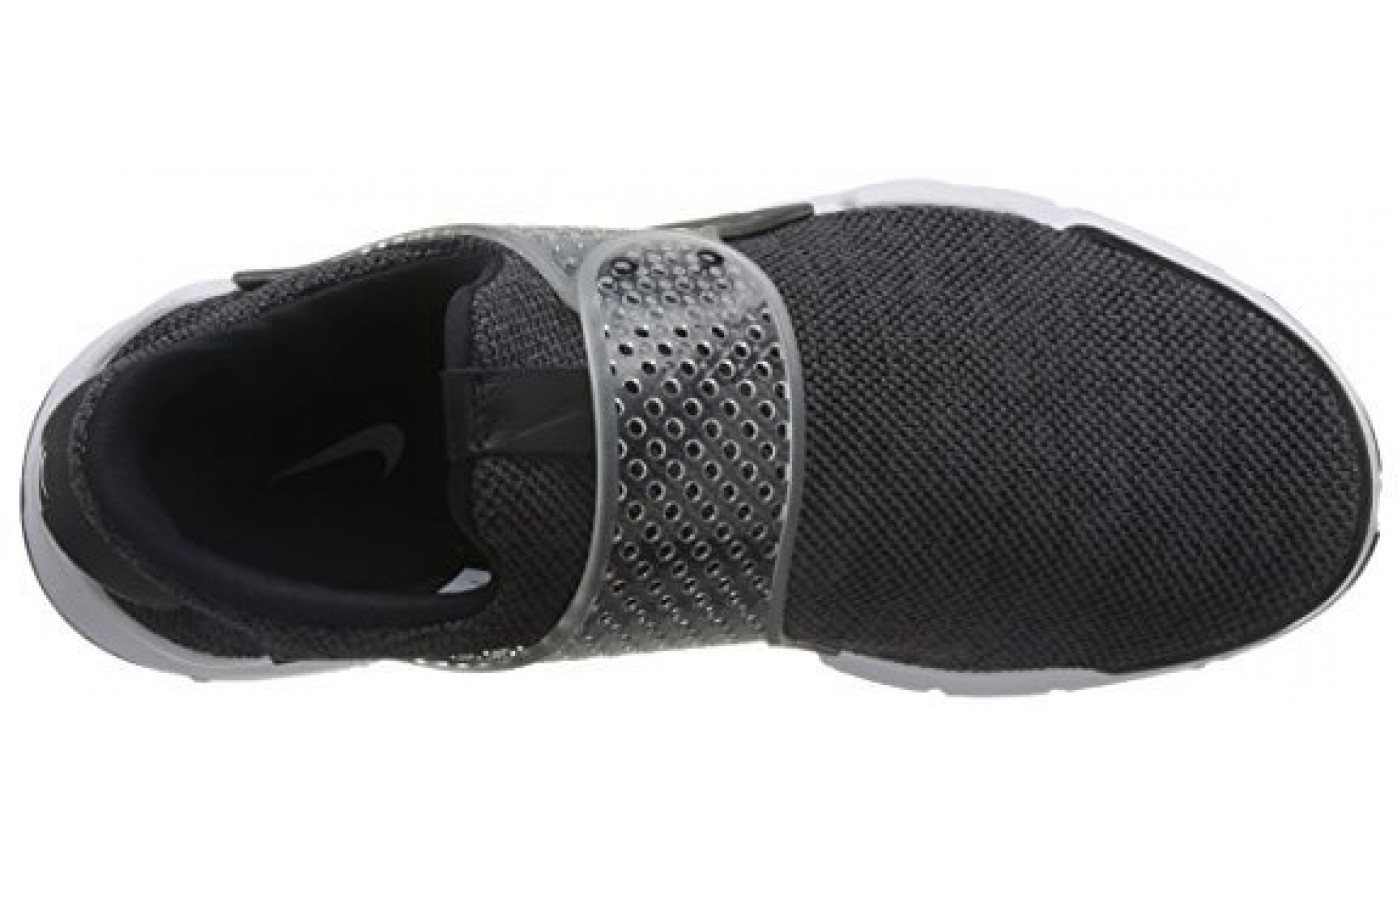 The Nike Sock Dart SE Premium top perspective 